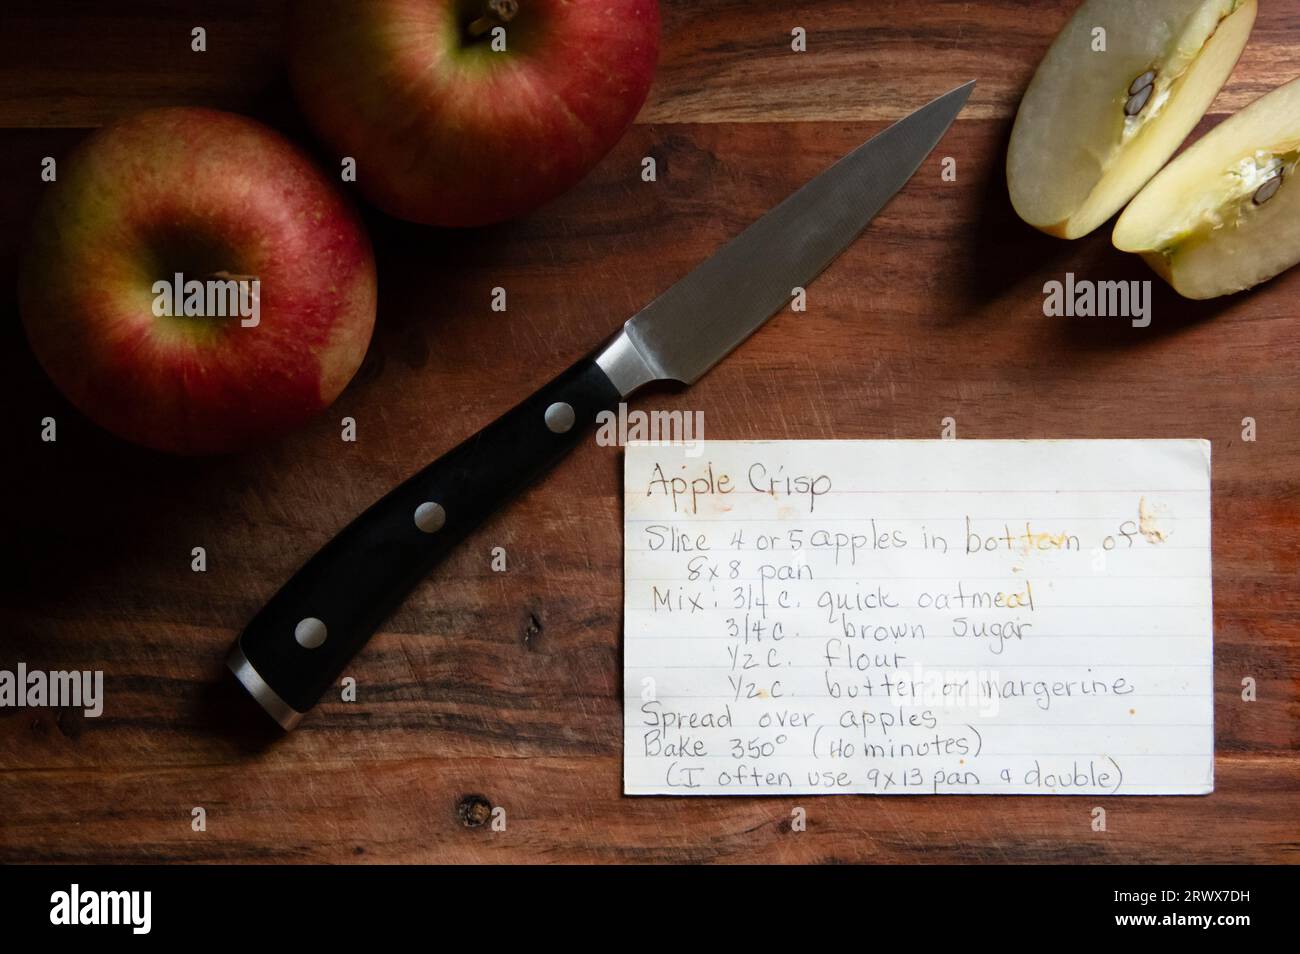 Scheda ricetta croccante di mele scritta a mano su tagliere di legno con coltello e mele Foto Stock